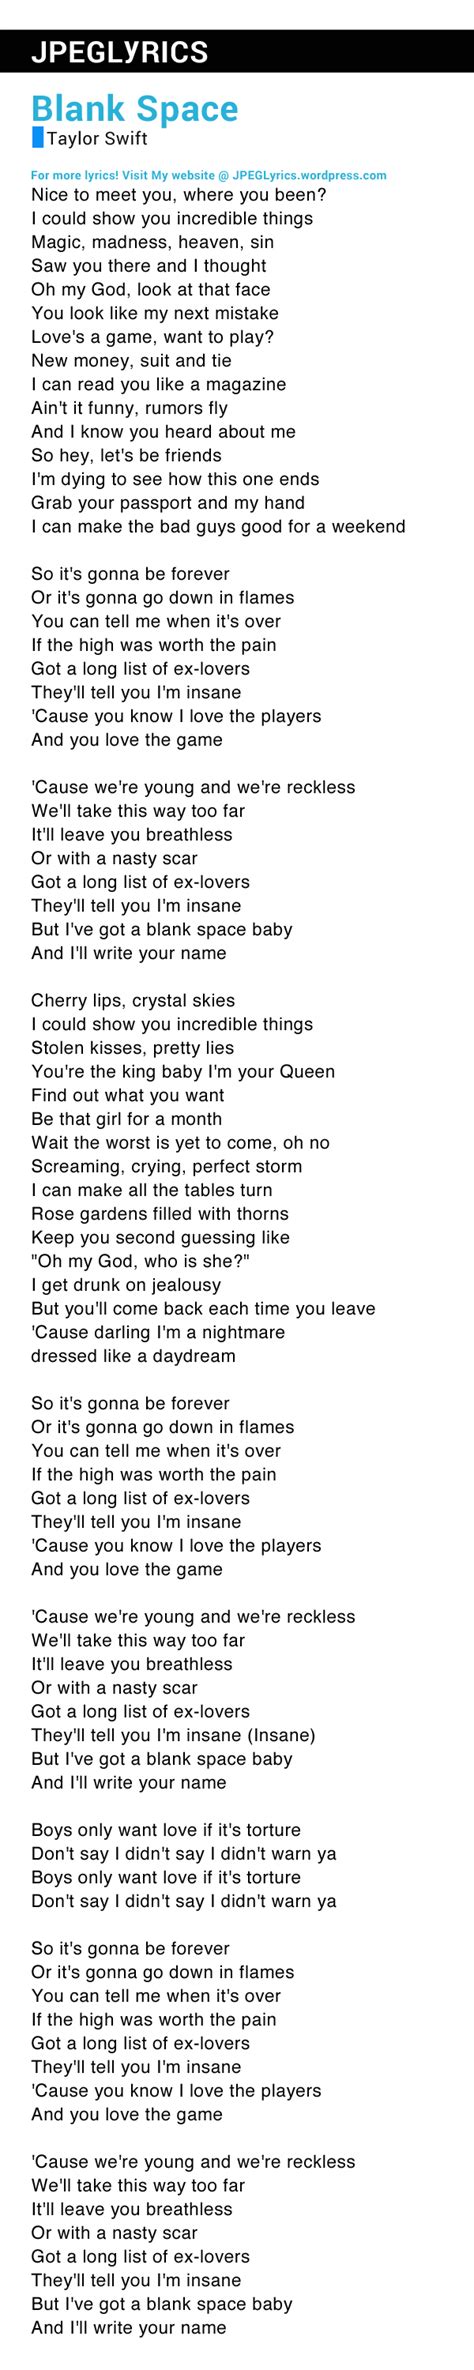 Blank Space By Taylor Swift Lyrics Jpeg Lyrics